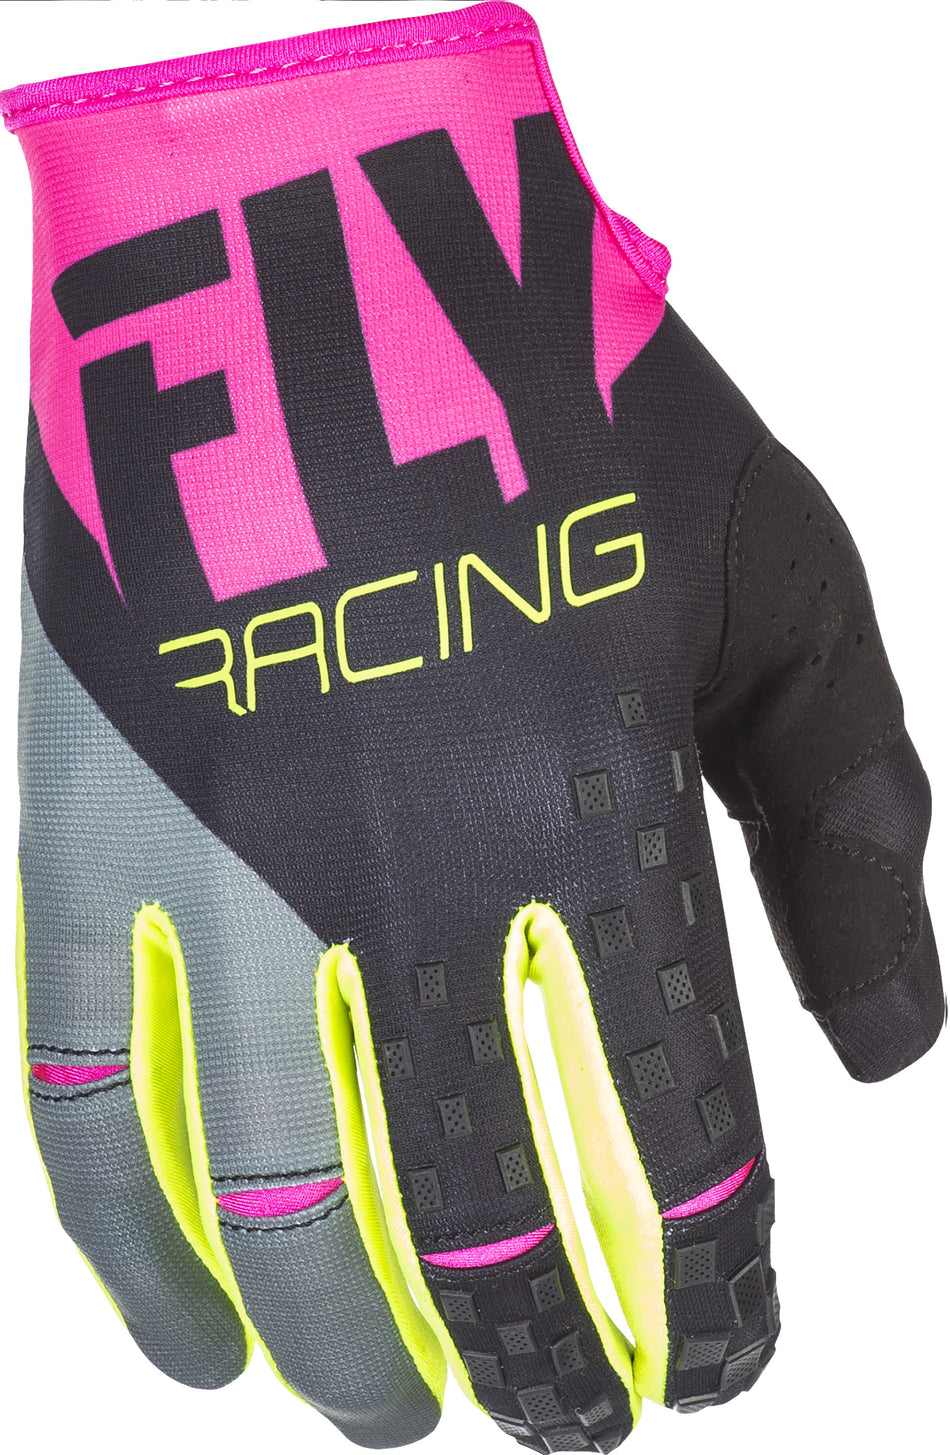 FLY RACING Kinetic Gloves Neon Pink/Black/Hi-Vis Sz 4 371-41904